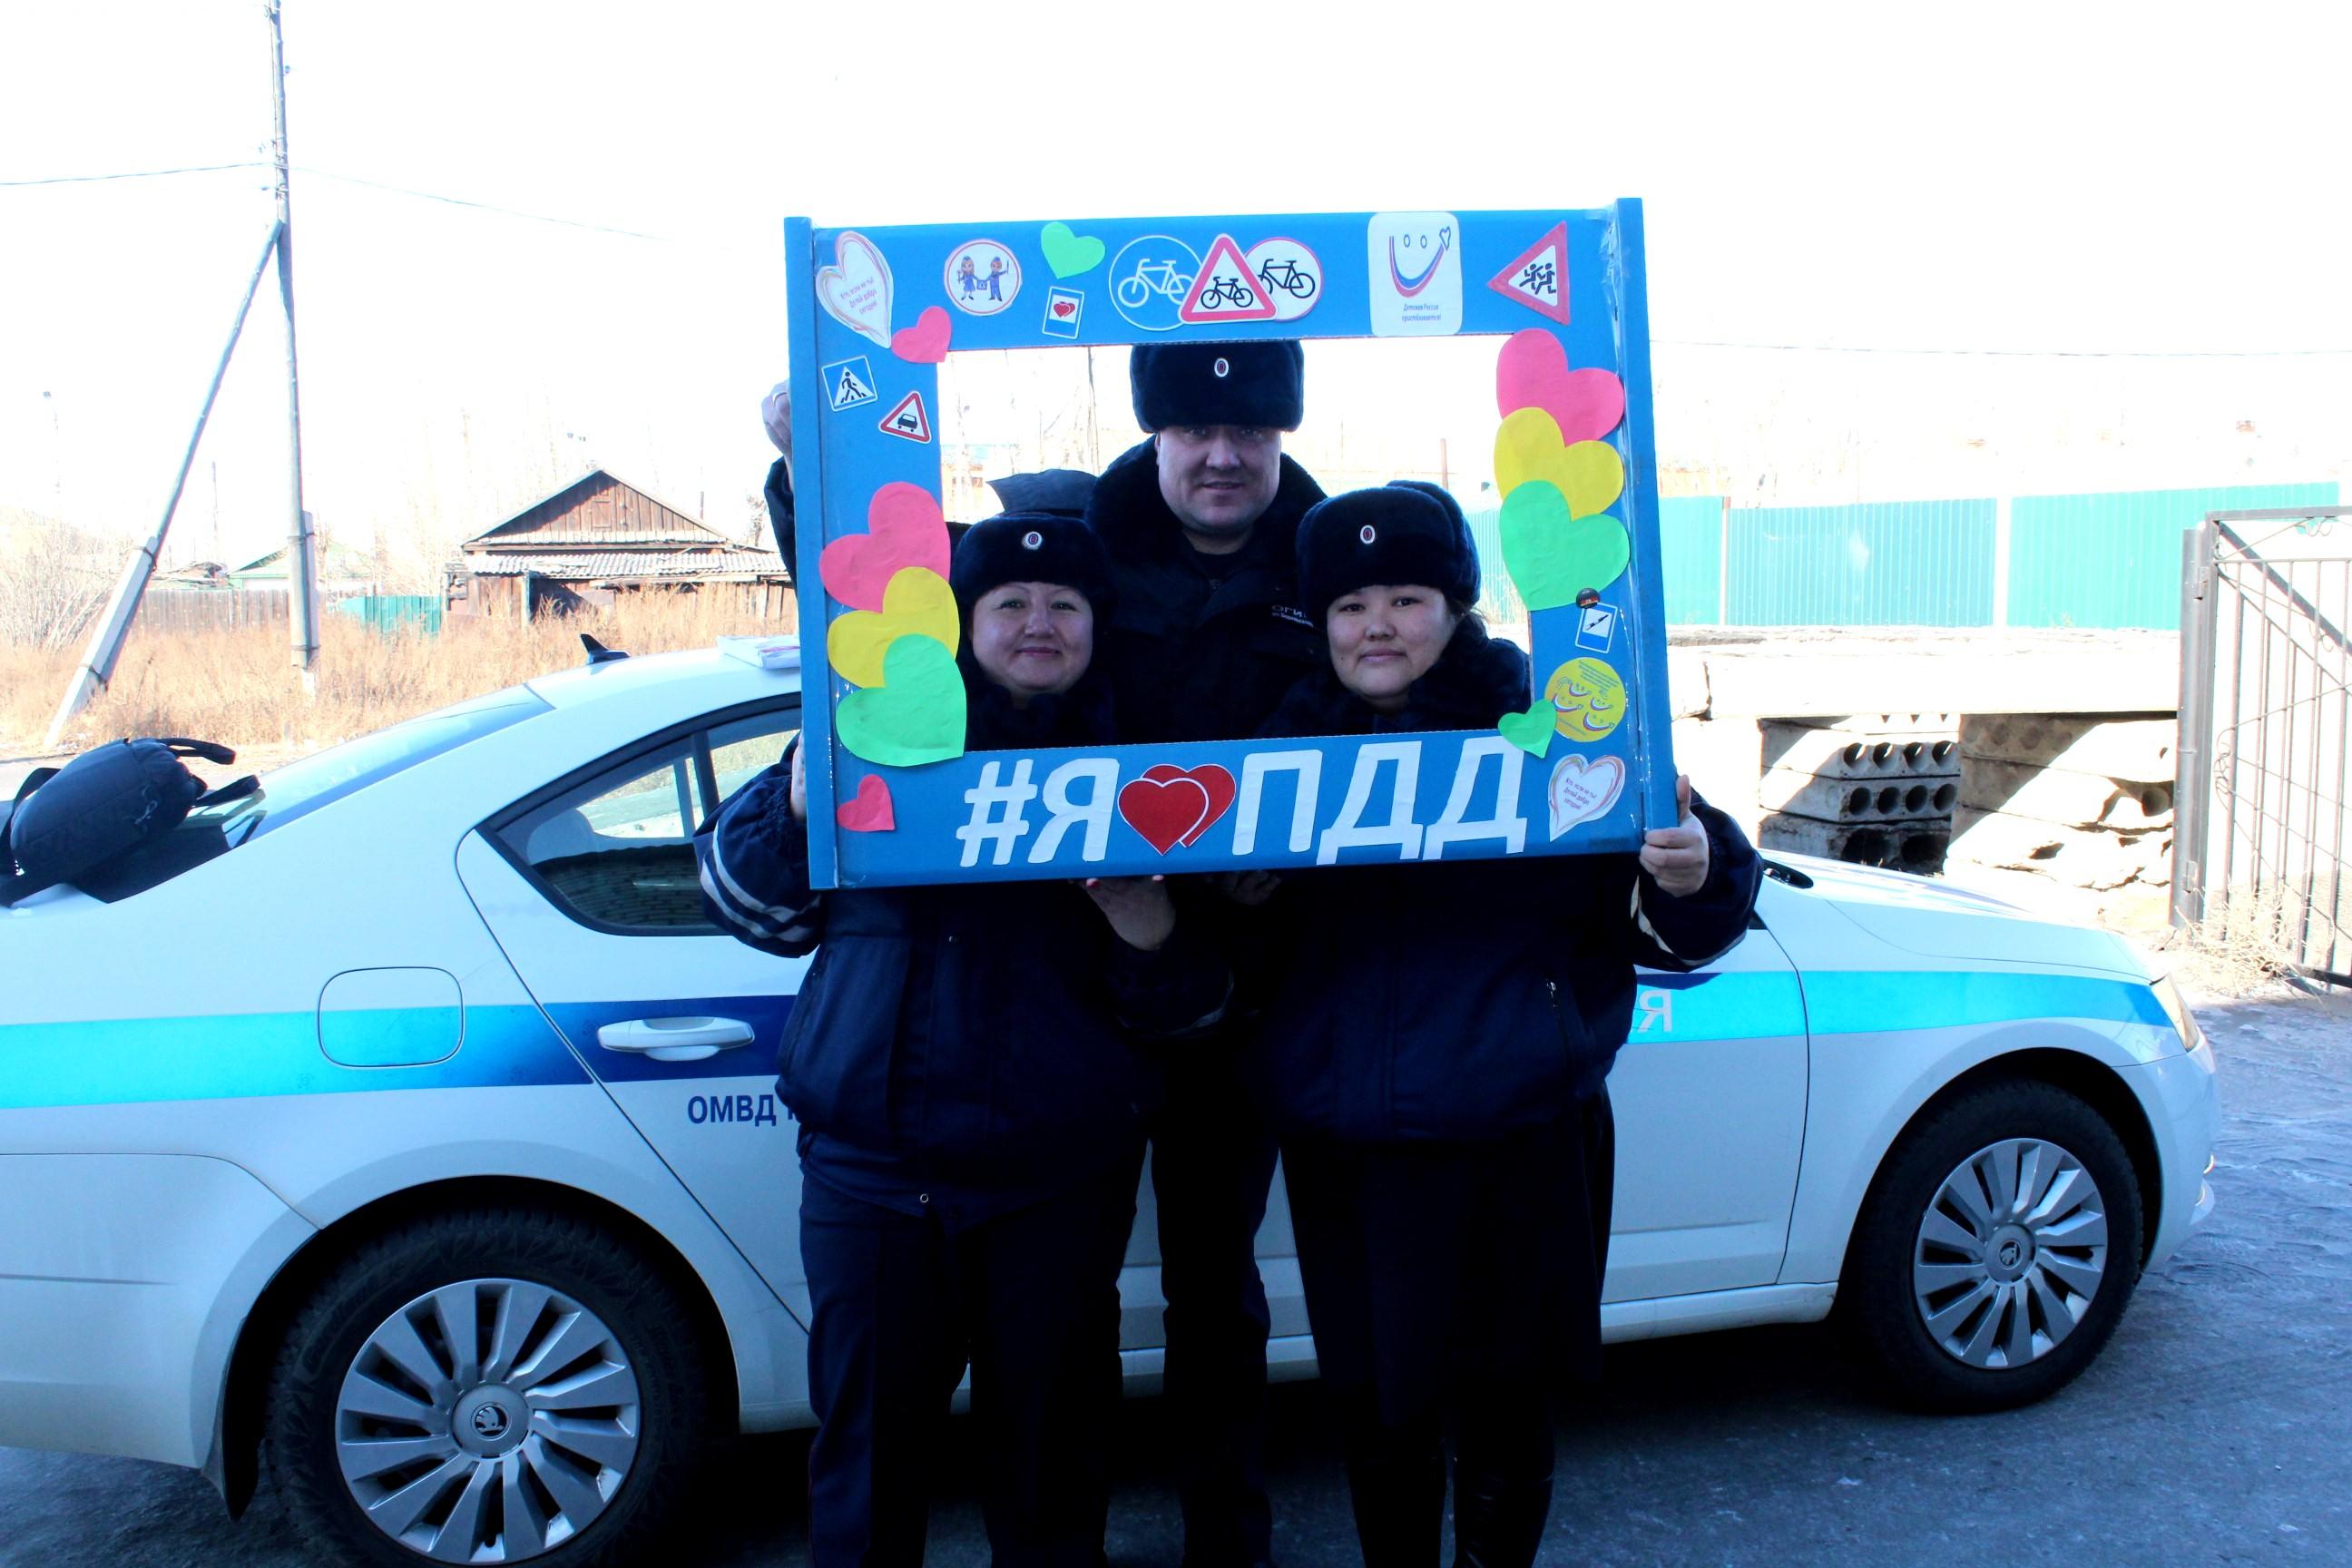 Сотрудники ГИБДД раздали пряники в виде сердца водителям в Забайкалье 14 февраля